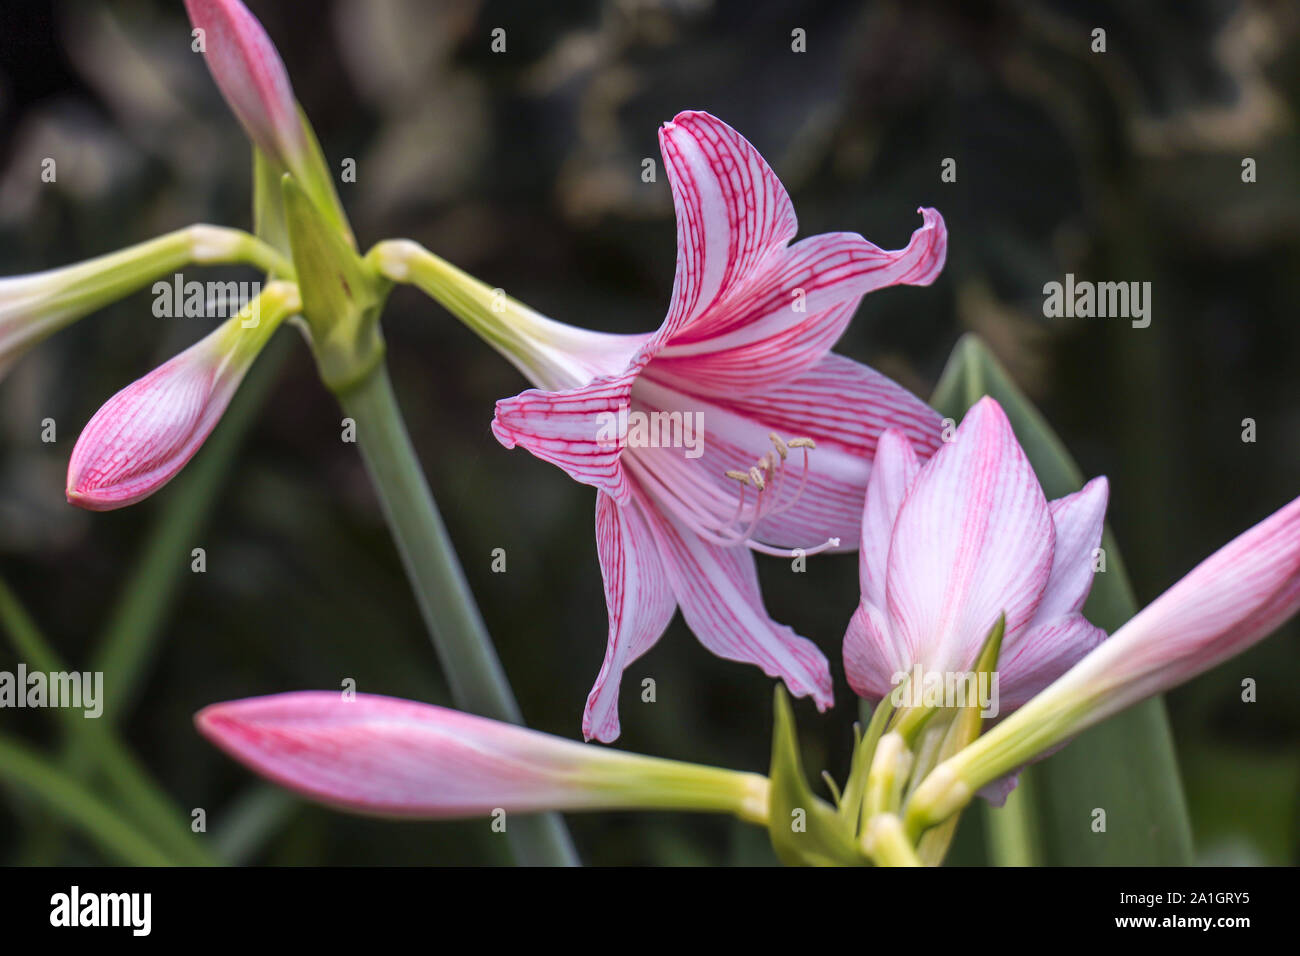 Schone Blumenbilder Hintergrundbilder Stockfotos Und Bilder Kaufen Alamy